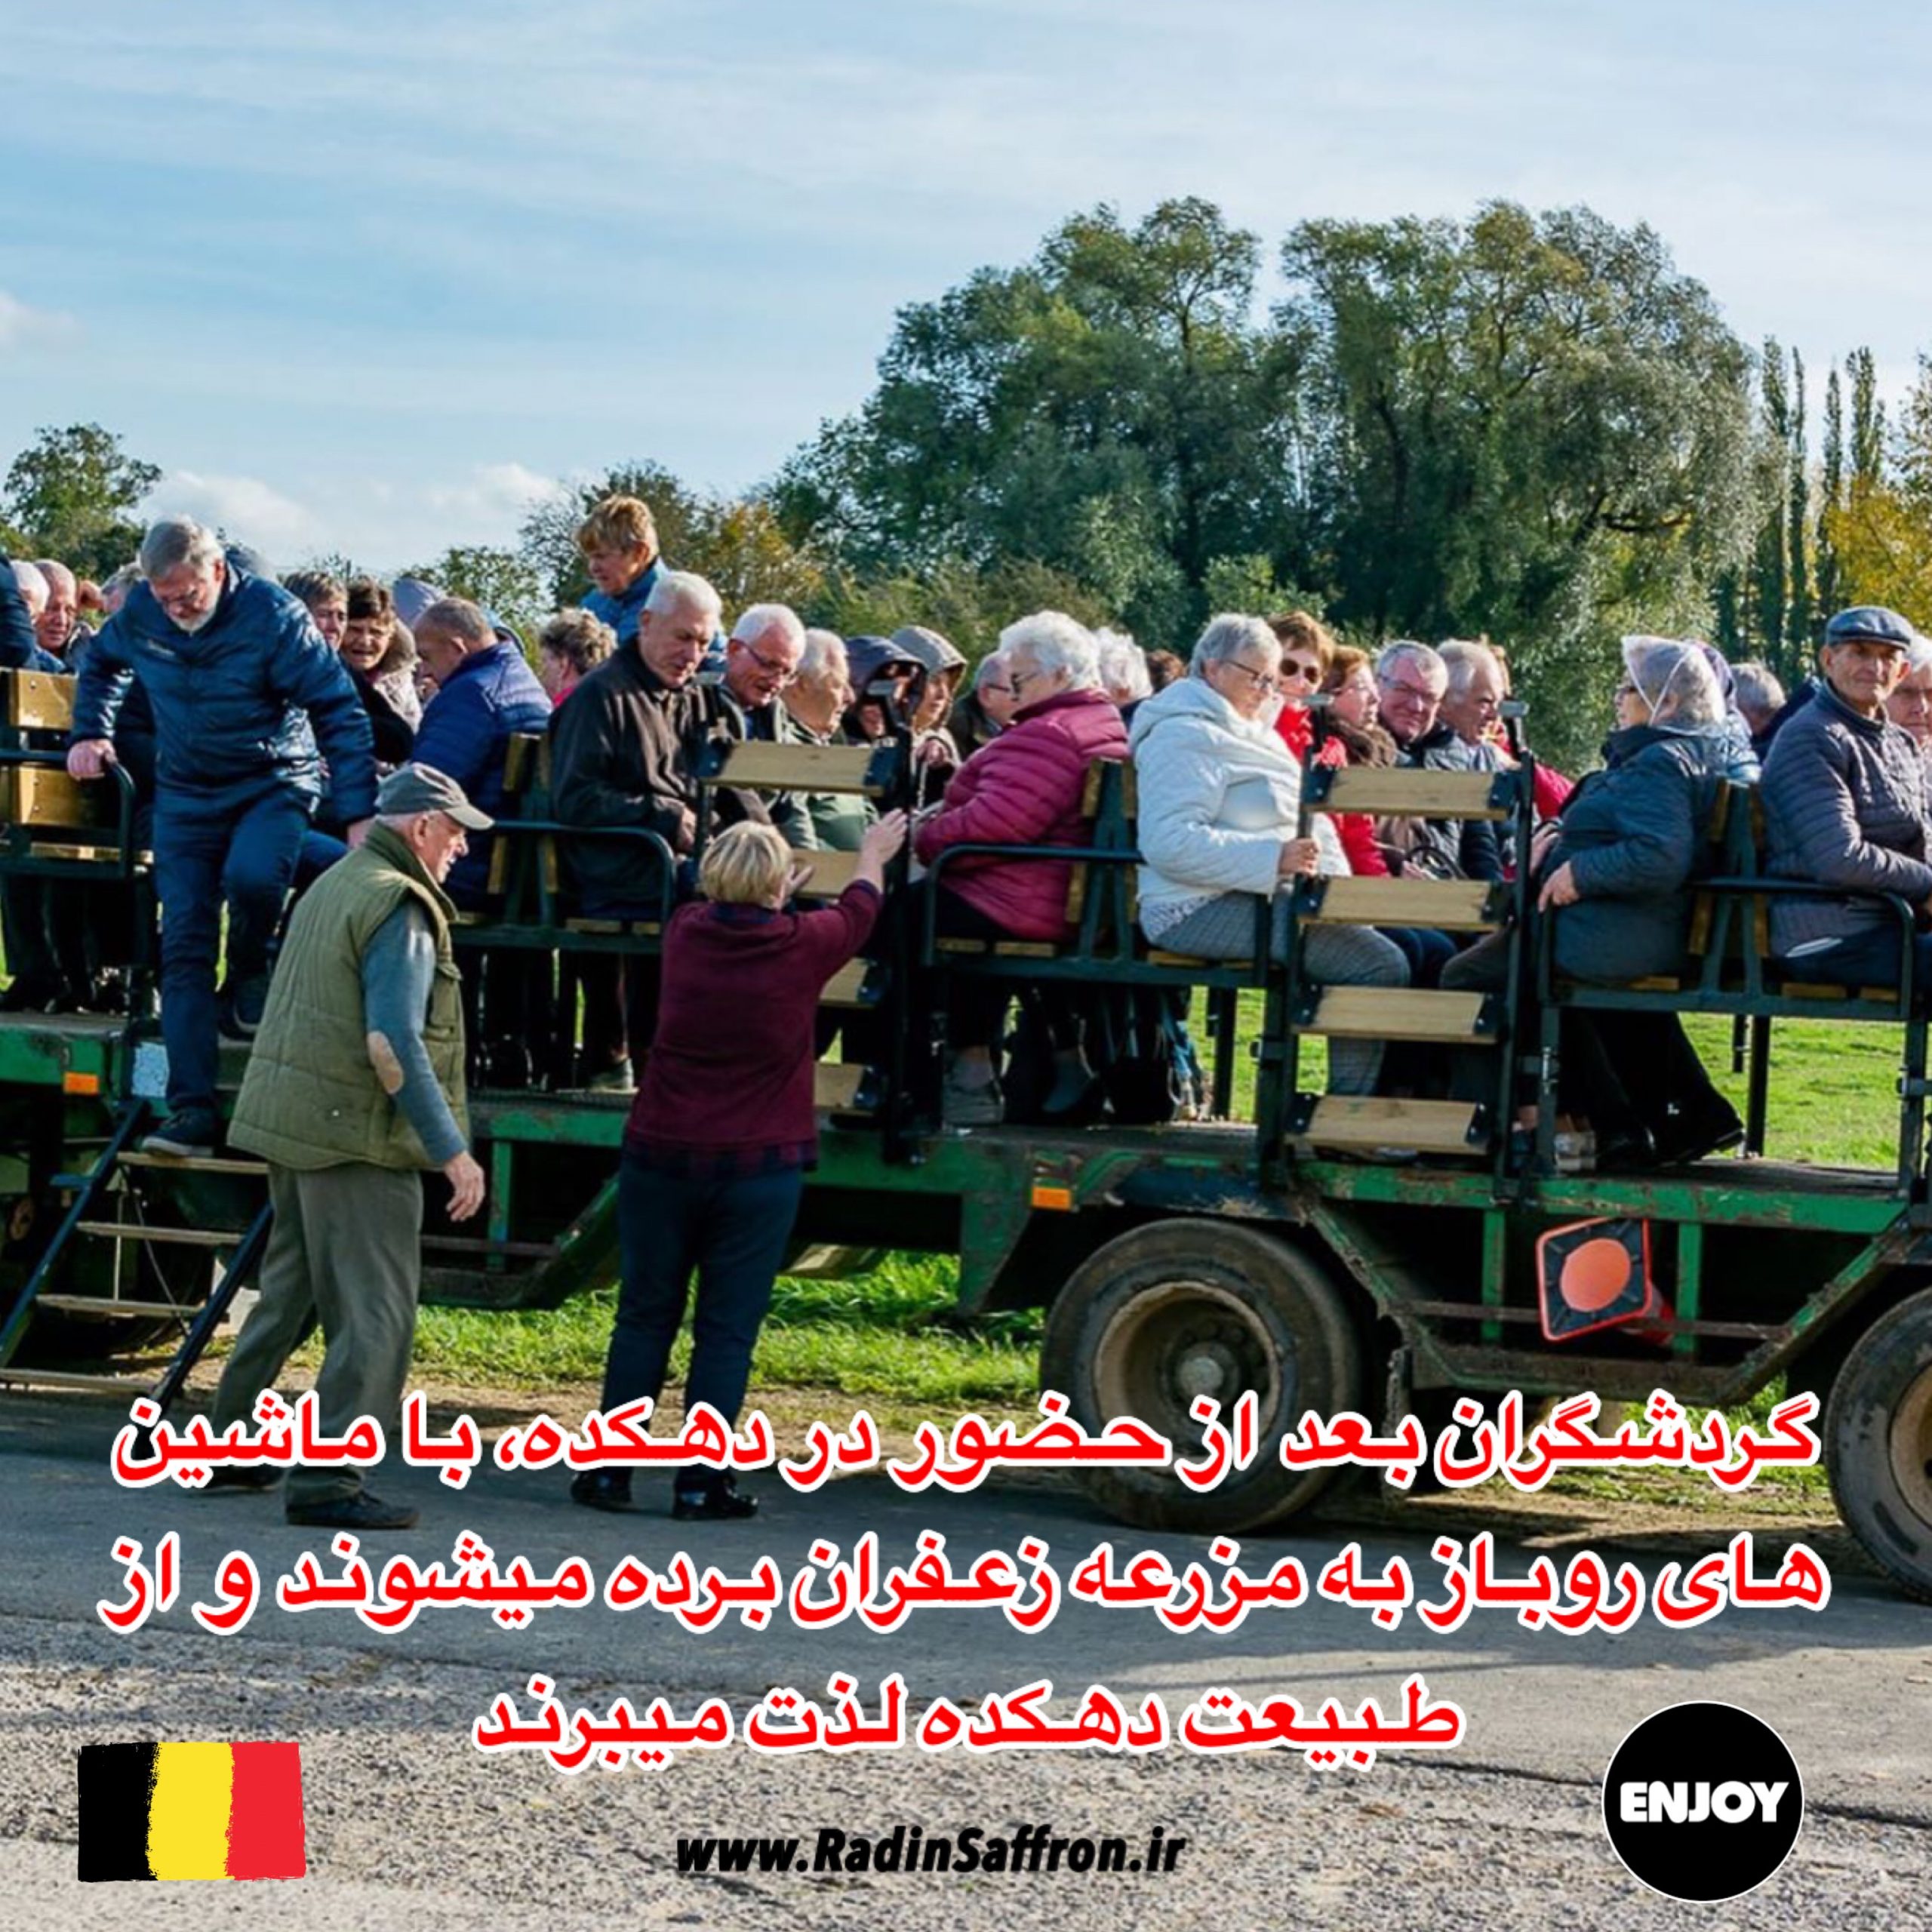 ماشین روباز مزرعه زعفران بلژیک